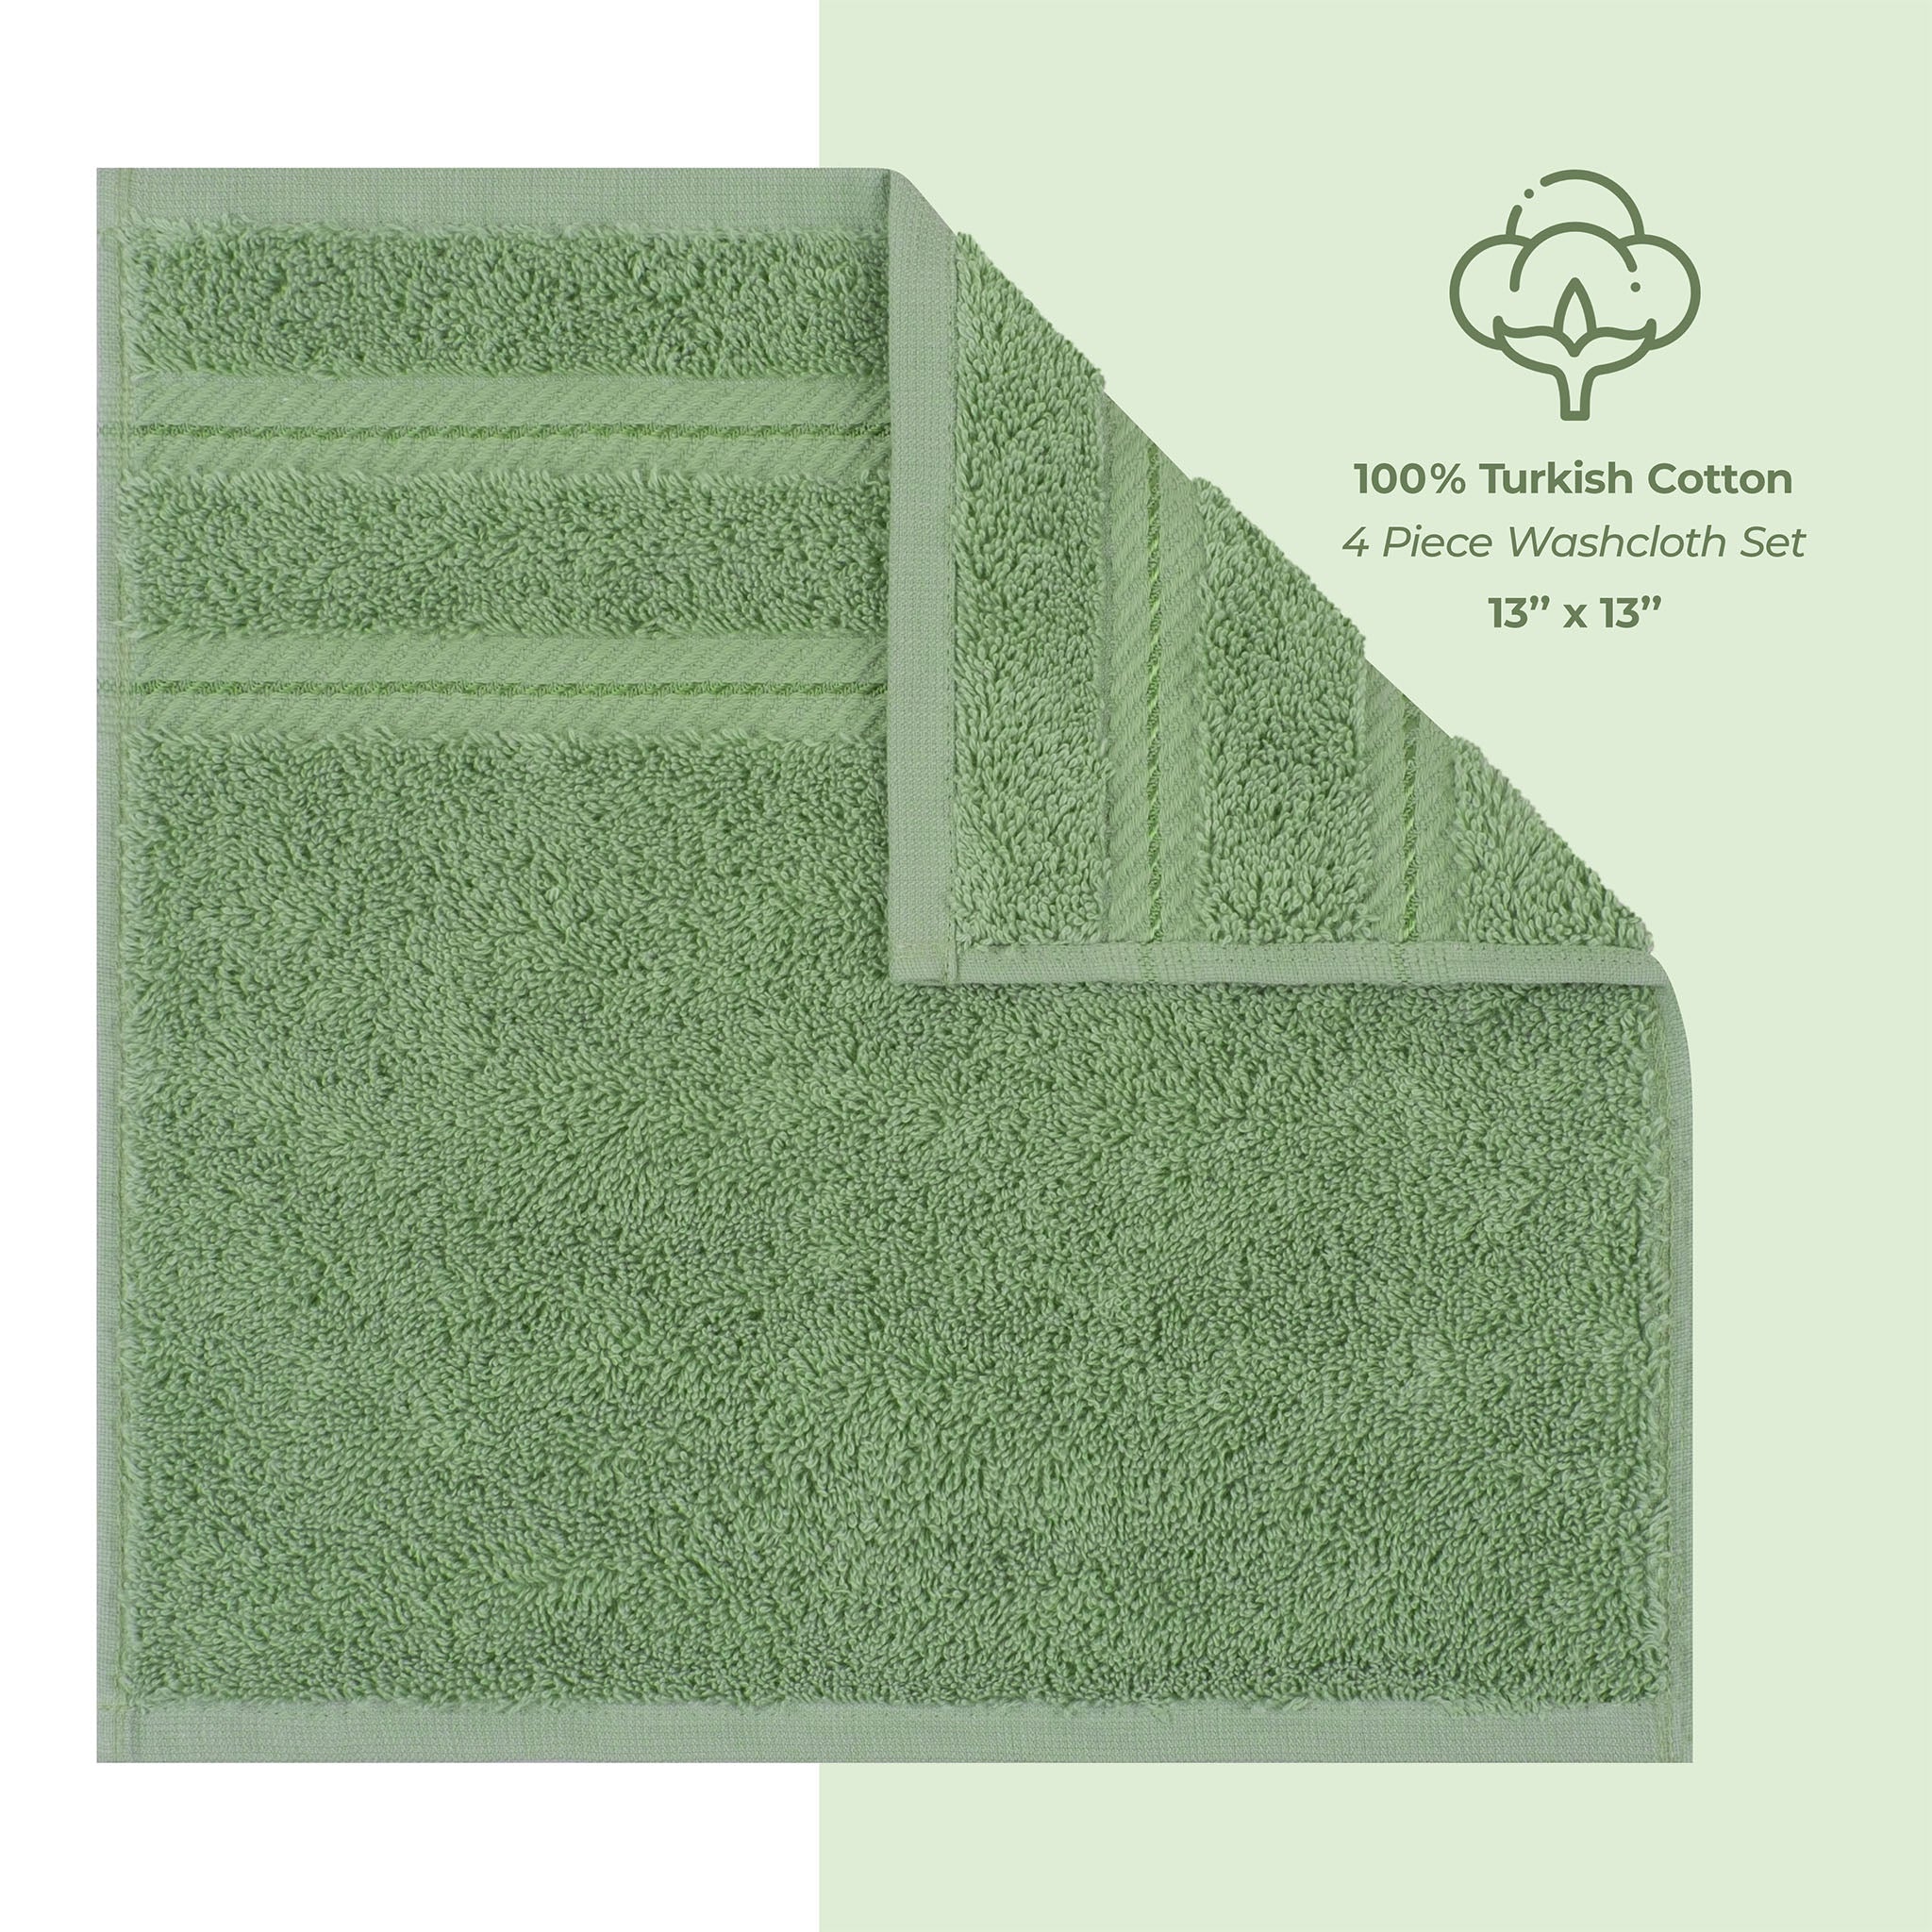 American Soft Linen 100% Turkish Cotton 4 Piece Washcloth Set sage-green-4